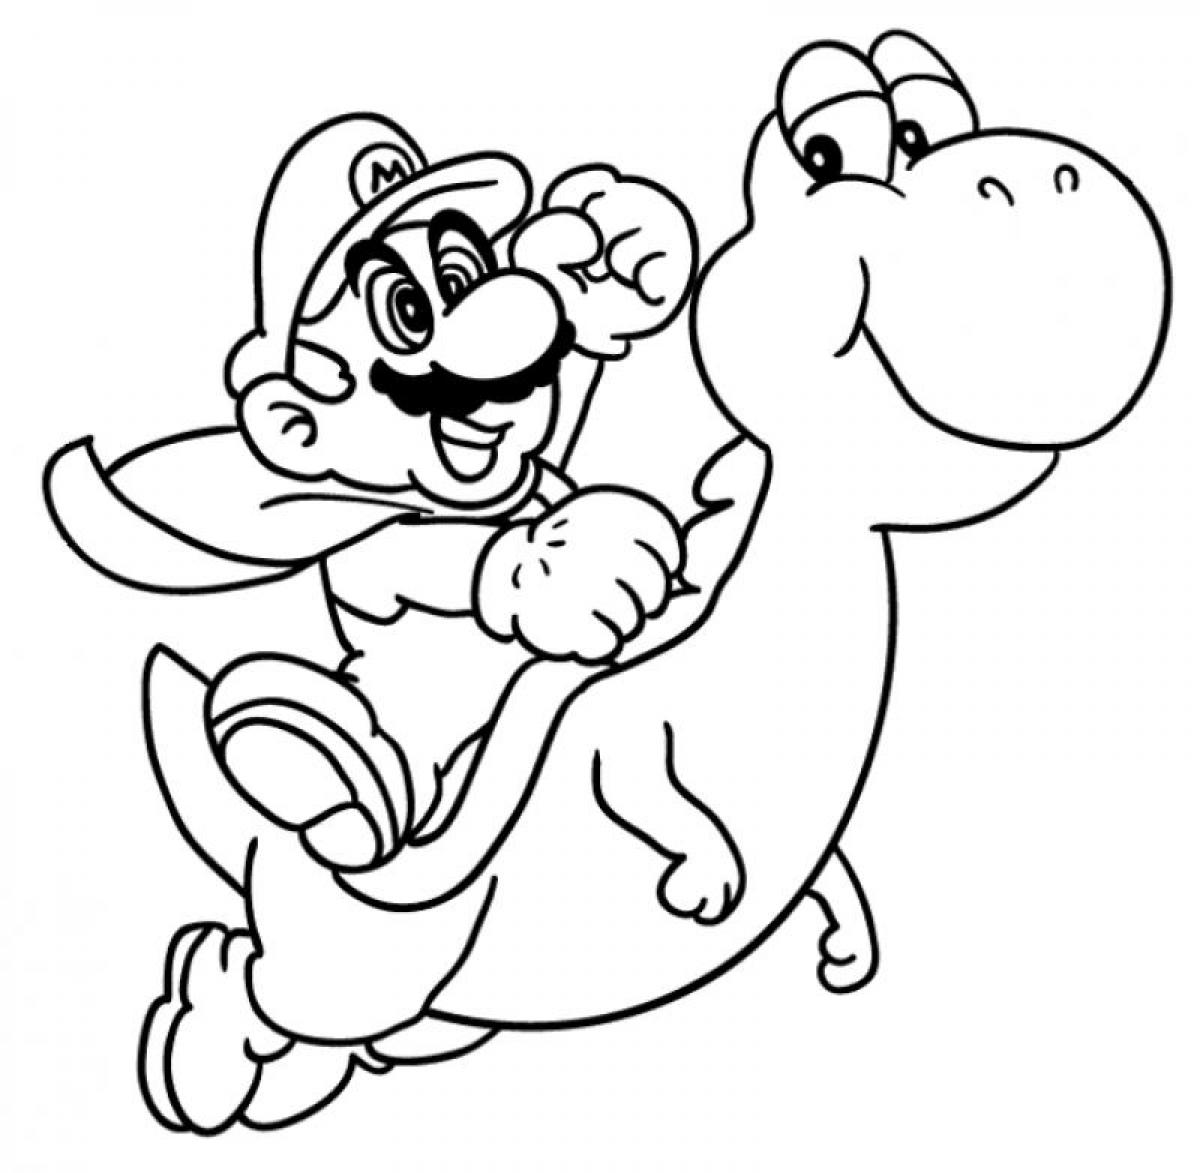 Mario Yoshi coloring page